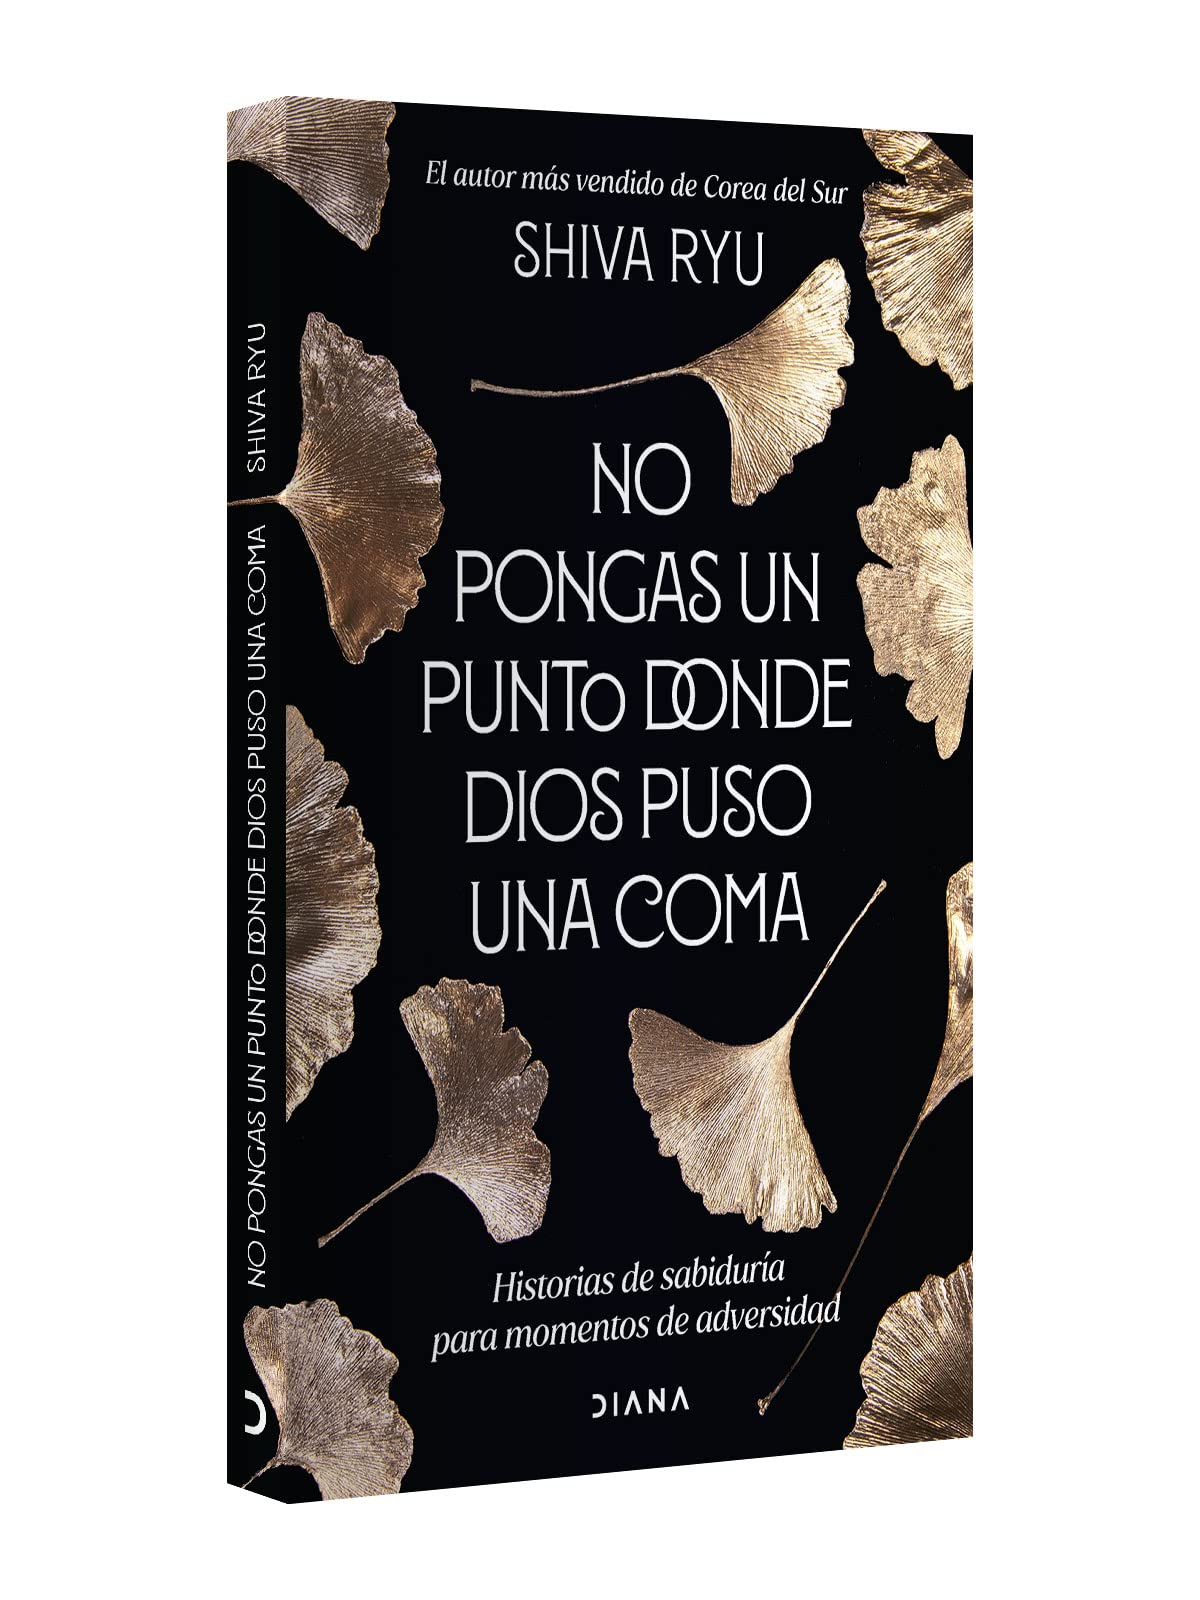 No pongas un punto donde Dios puso una coma: Historias de sabiduría para momentos de adversidad (Spanish Edition)